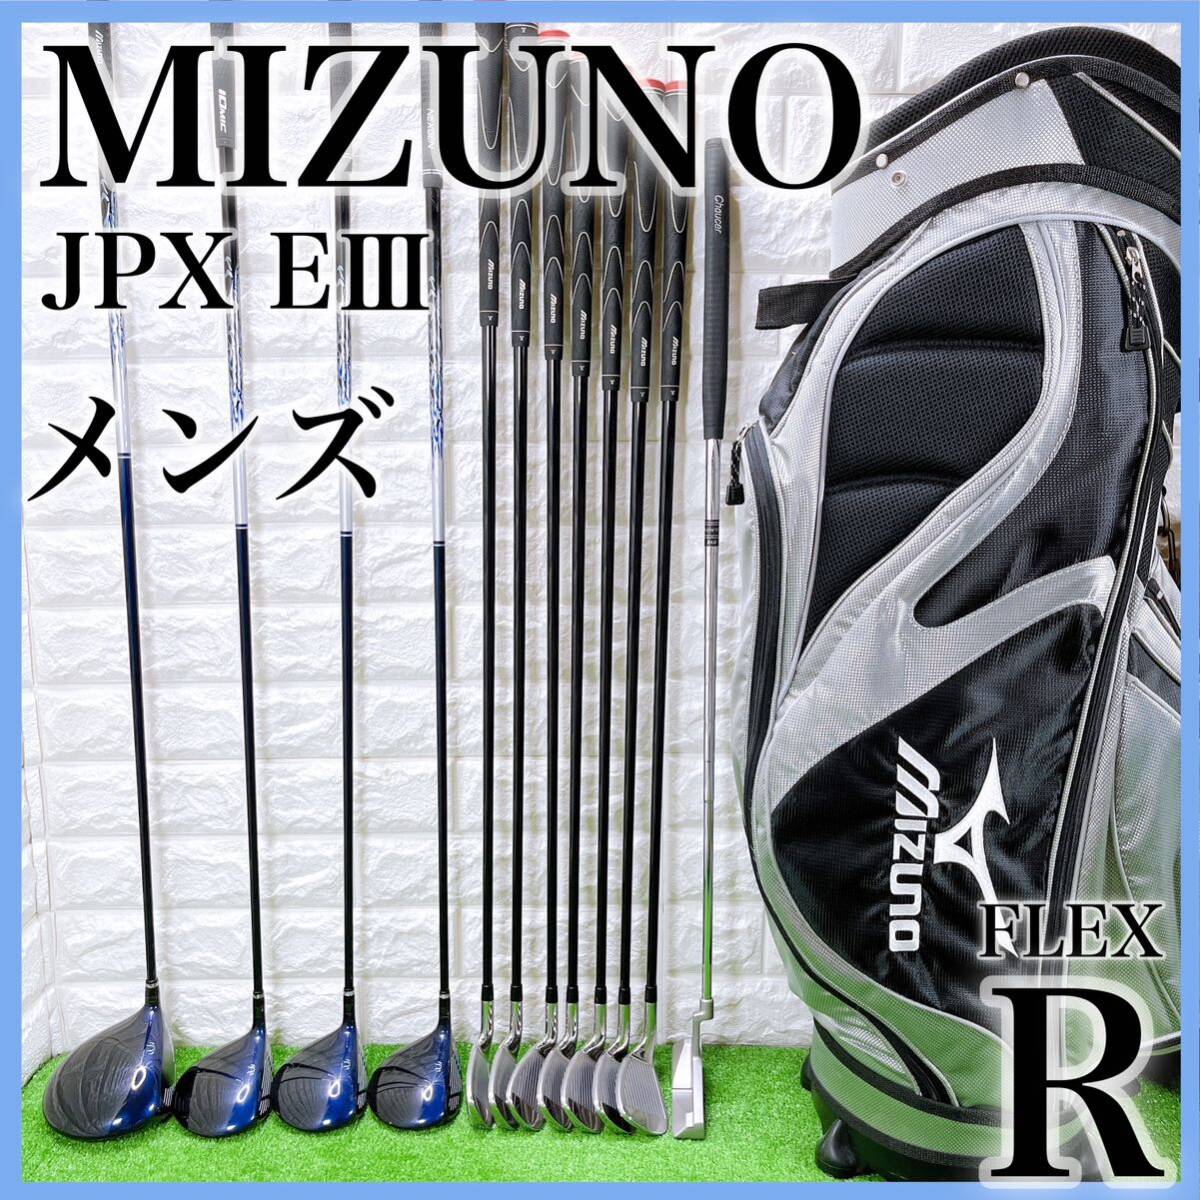 ミズノ JPX EⅢ メンズクラブ ゴルフセット キャディバッグ付き 右利き 12本 MIZUNO E3 フレックス R 初心者_画像1